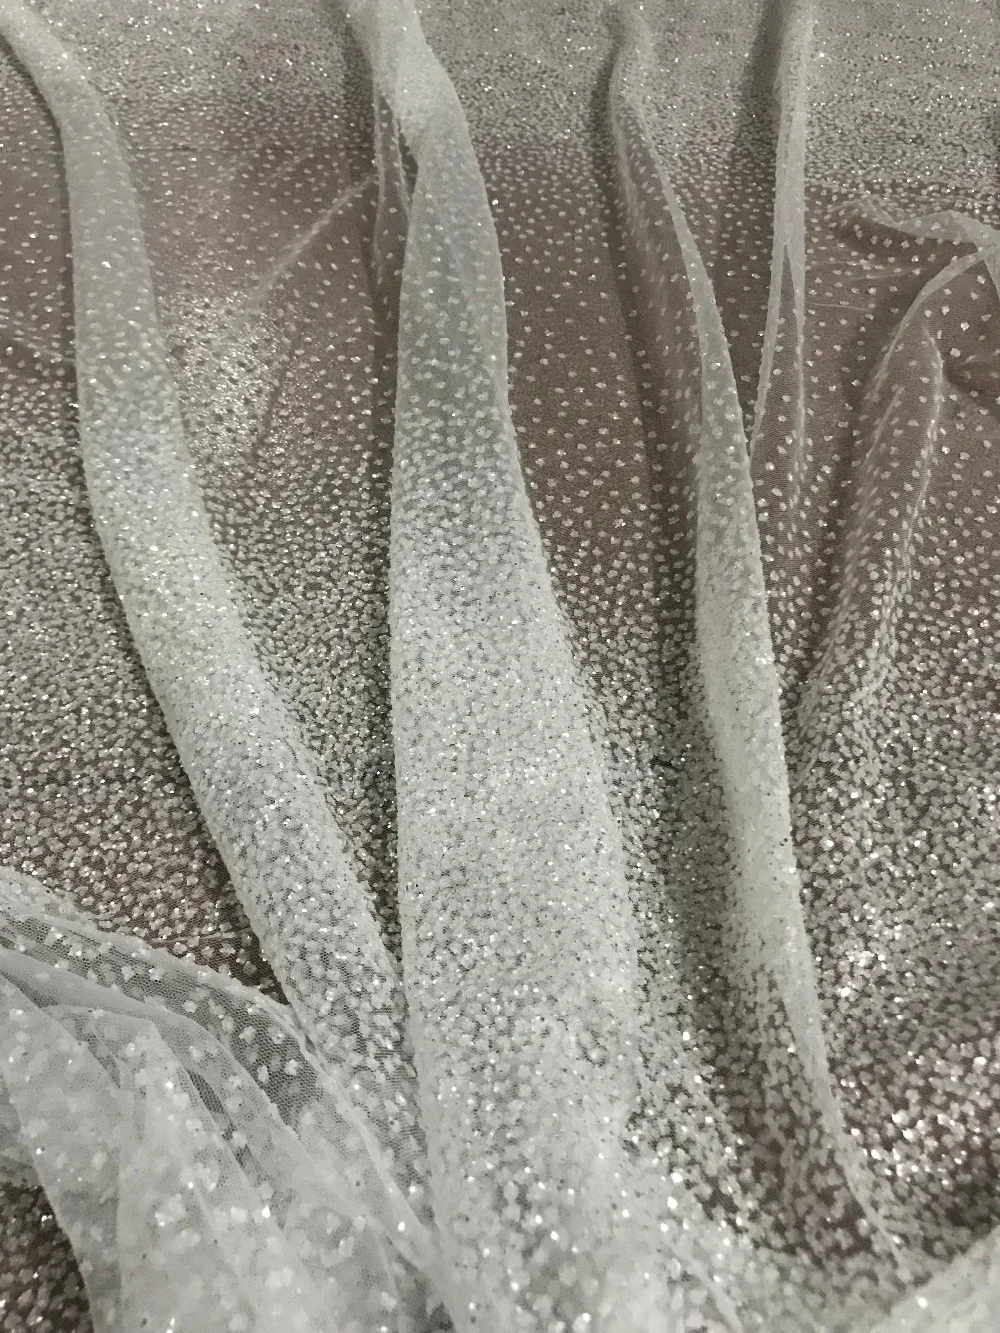 5 ярдов сетка тюль ручная печать ткань с блестящим кружевом белого цвета JIANXI.C-111409 для свадебного платья/вечернее платье/вечерние